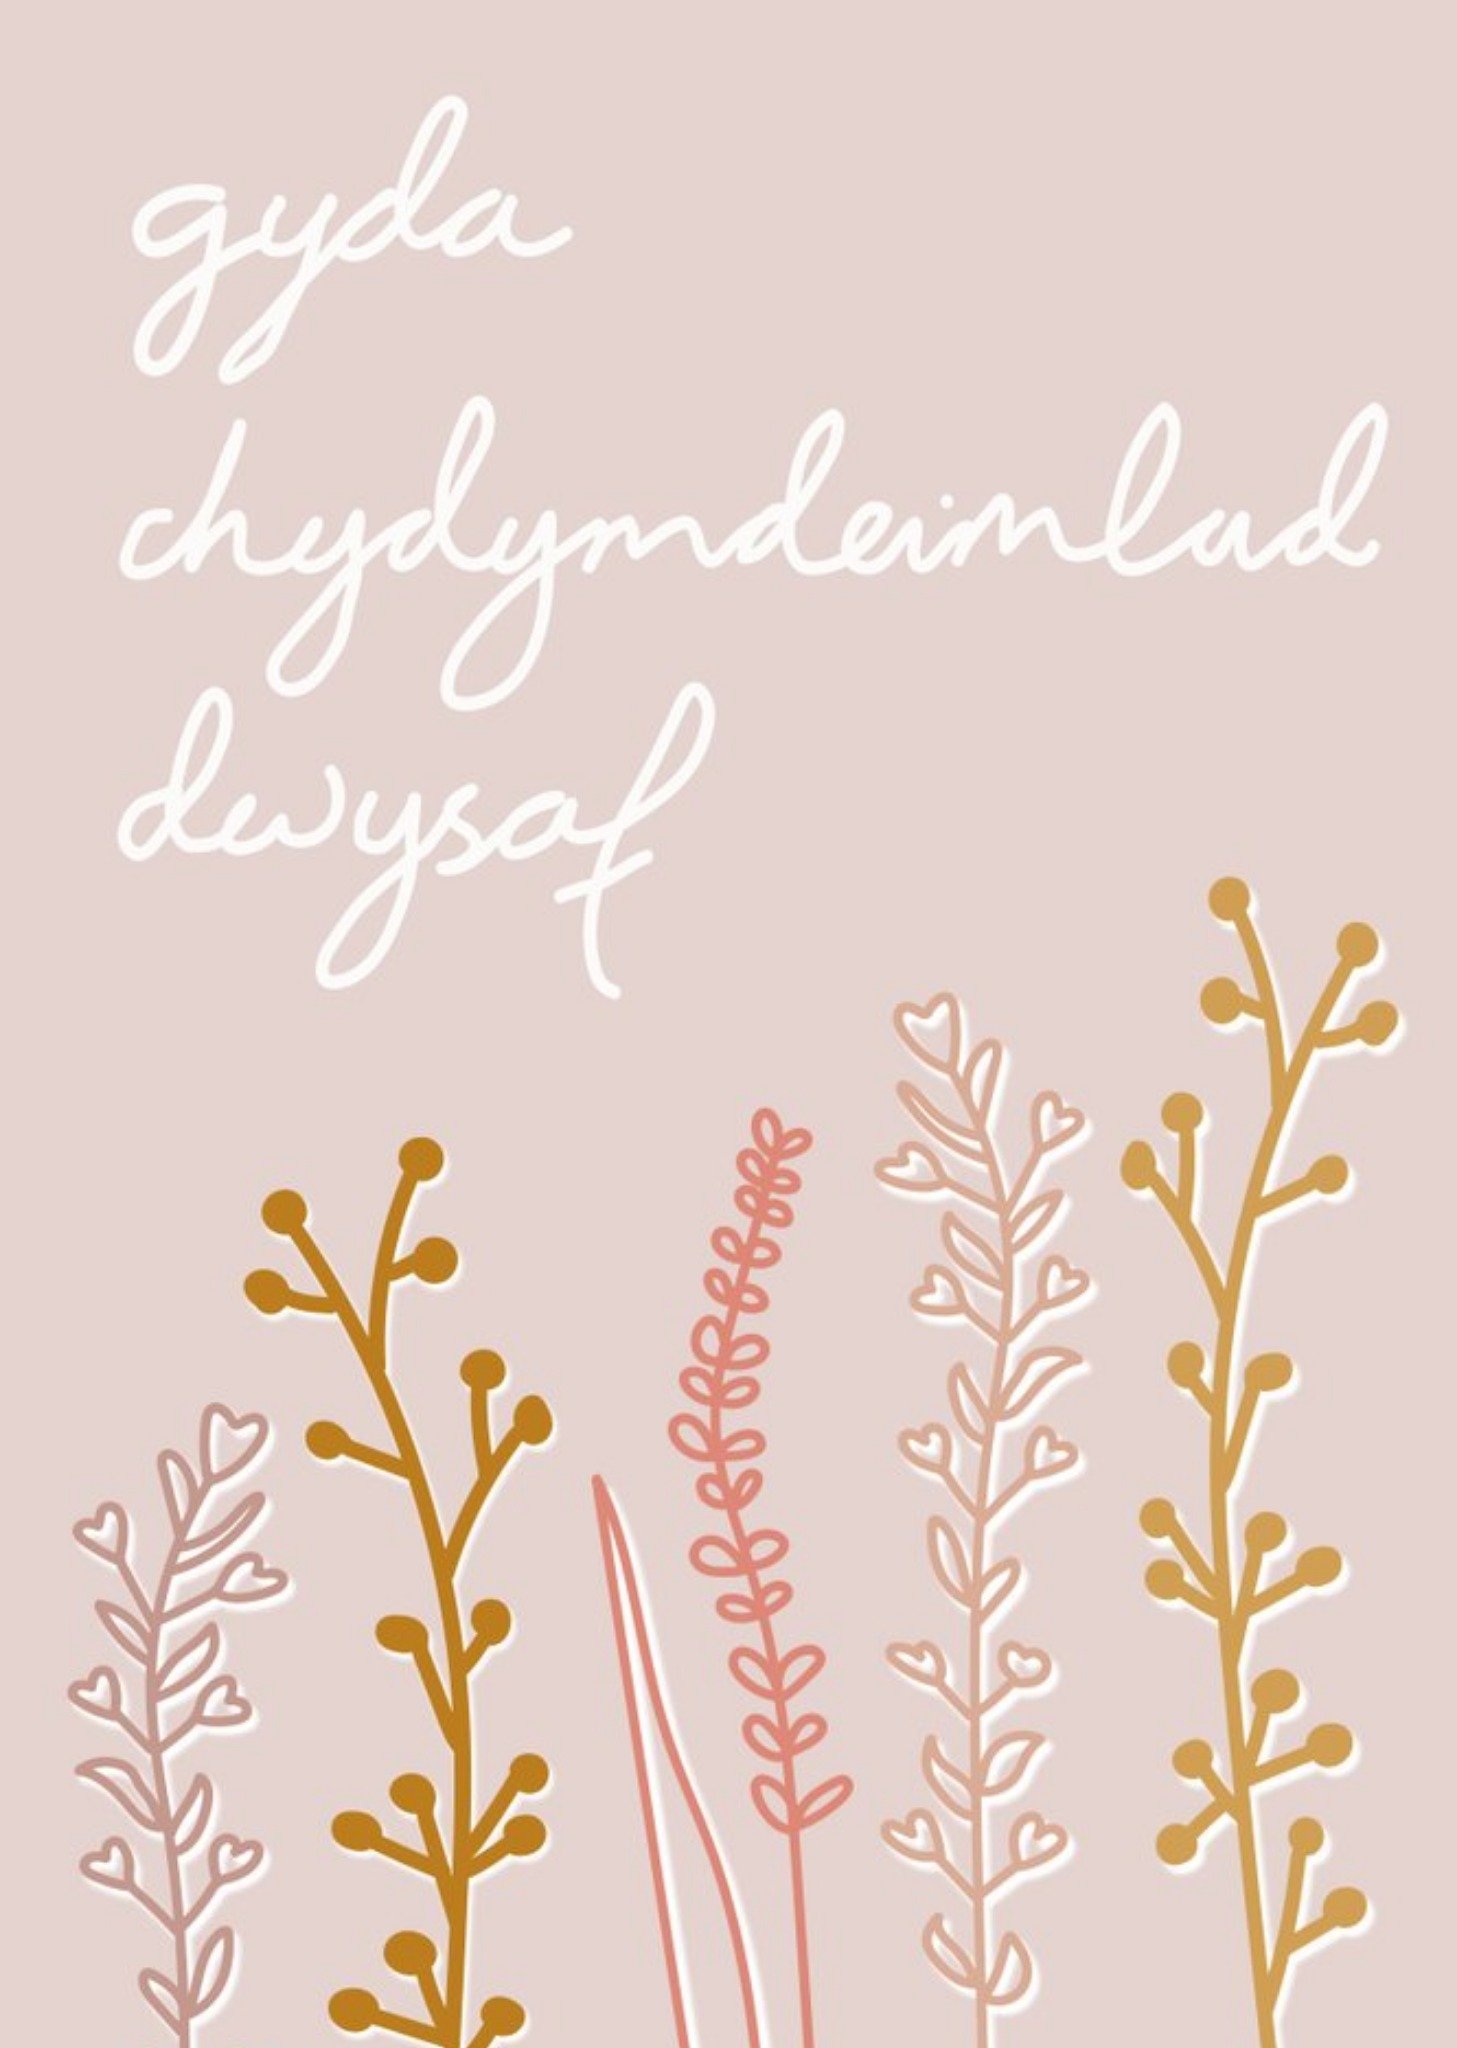 Moonpig Meaningful Messages Gyda Chydymdeimad Dwysaf Welsh Sympathy Card Ecard